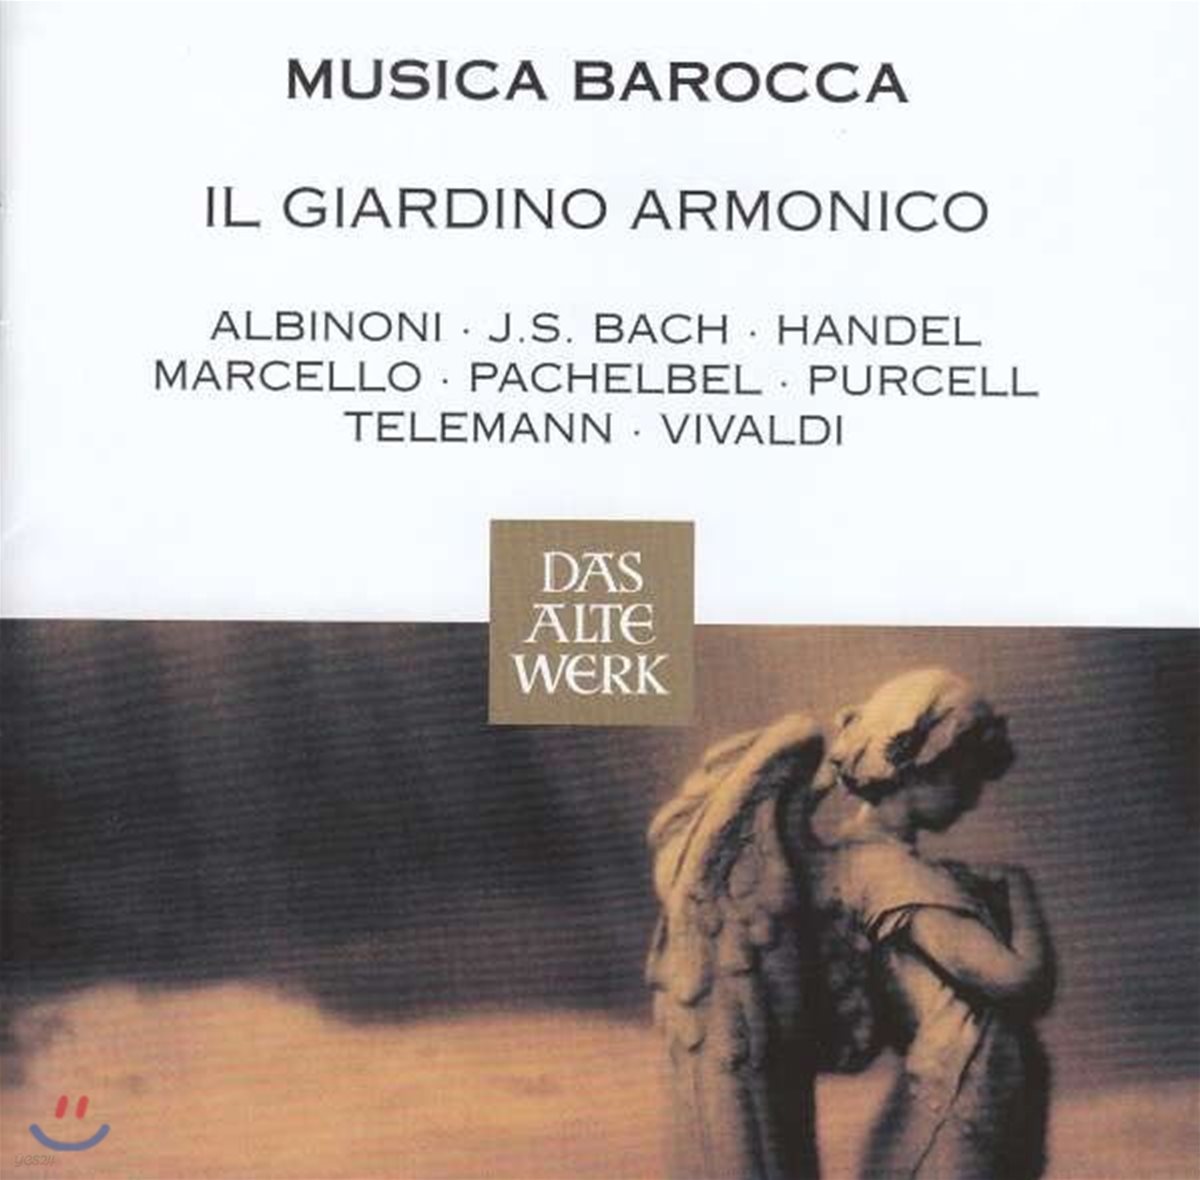 Il Giardino Armonico 바로크 음악 베스트 - 파헬벨: 캐논 / 알비노니: 아다지오 (Musica Barocca - Albinoni: Adagio / Pachelbel: Canon / Bach / Vivaldi) 일 쟈르디노 아르모니코